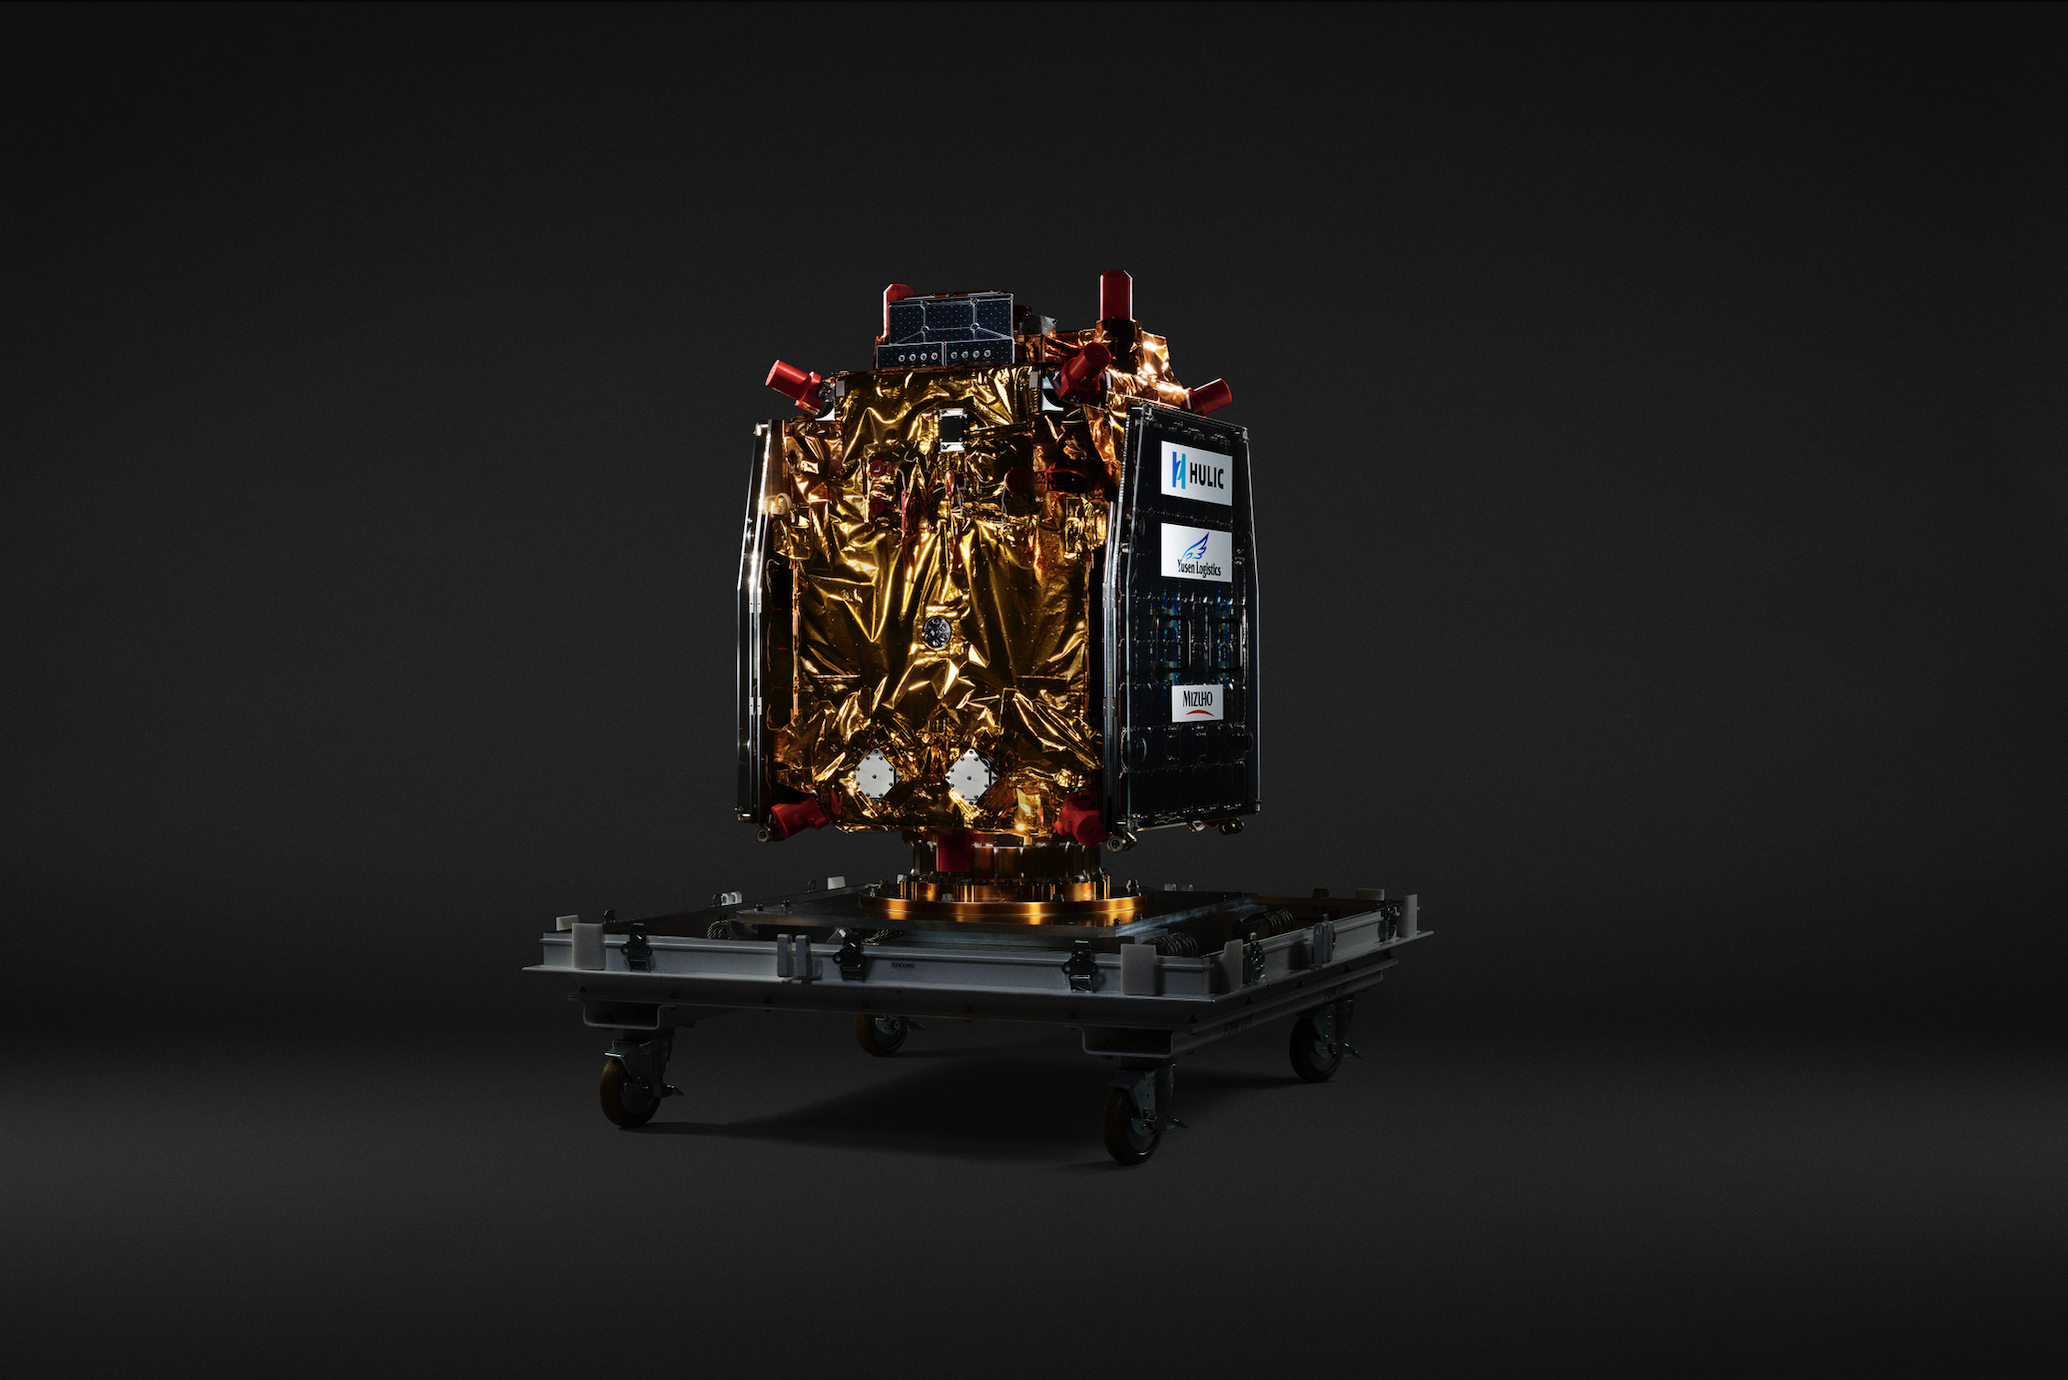 アストロスケールの商業デブリ除去実証衛星「ADRAS-J」、2月18日に打上げ